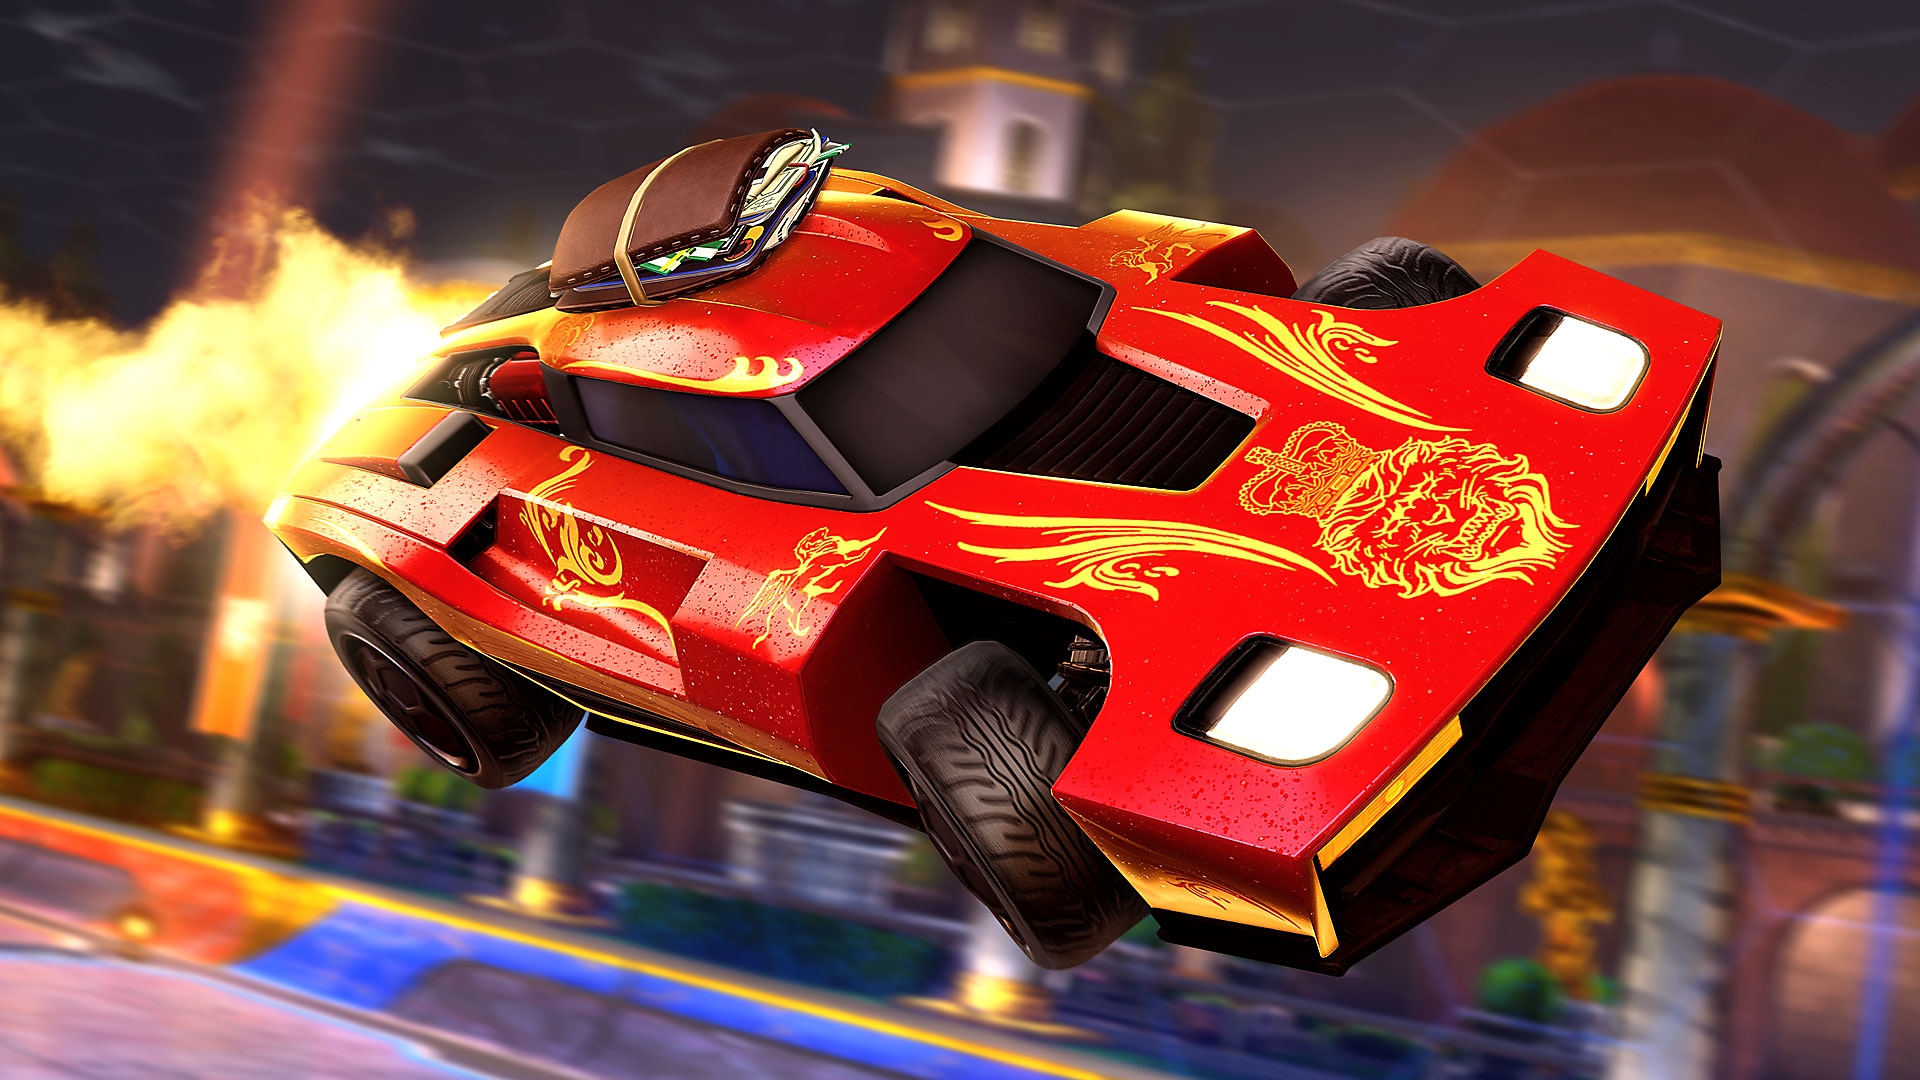 Rocket League - Istantanea della schermata che mostra un'auto sportiva rossa con fiamme che arriva da dietro